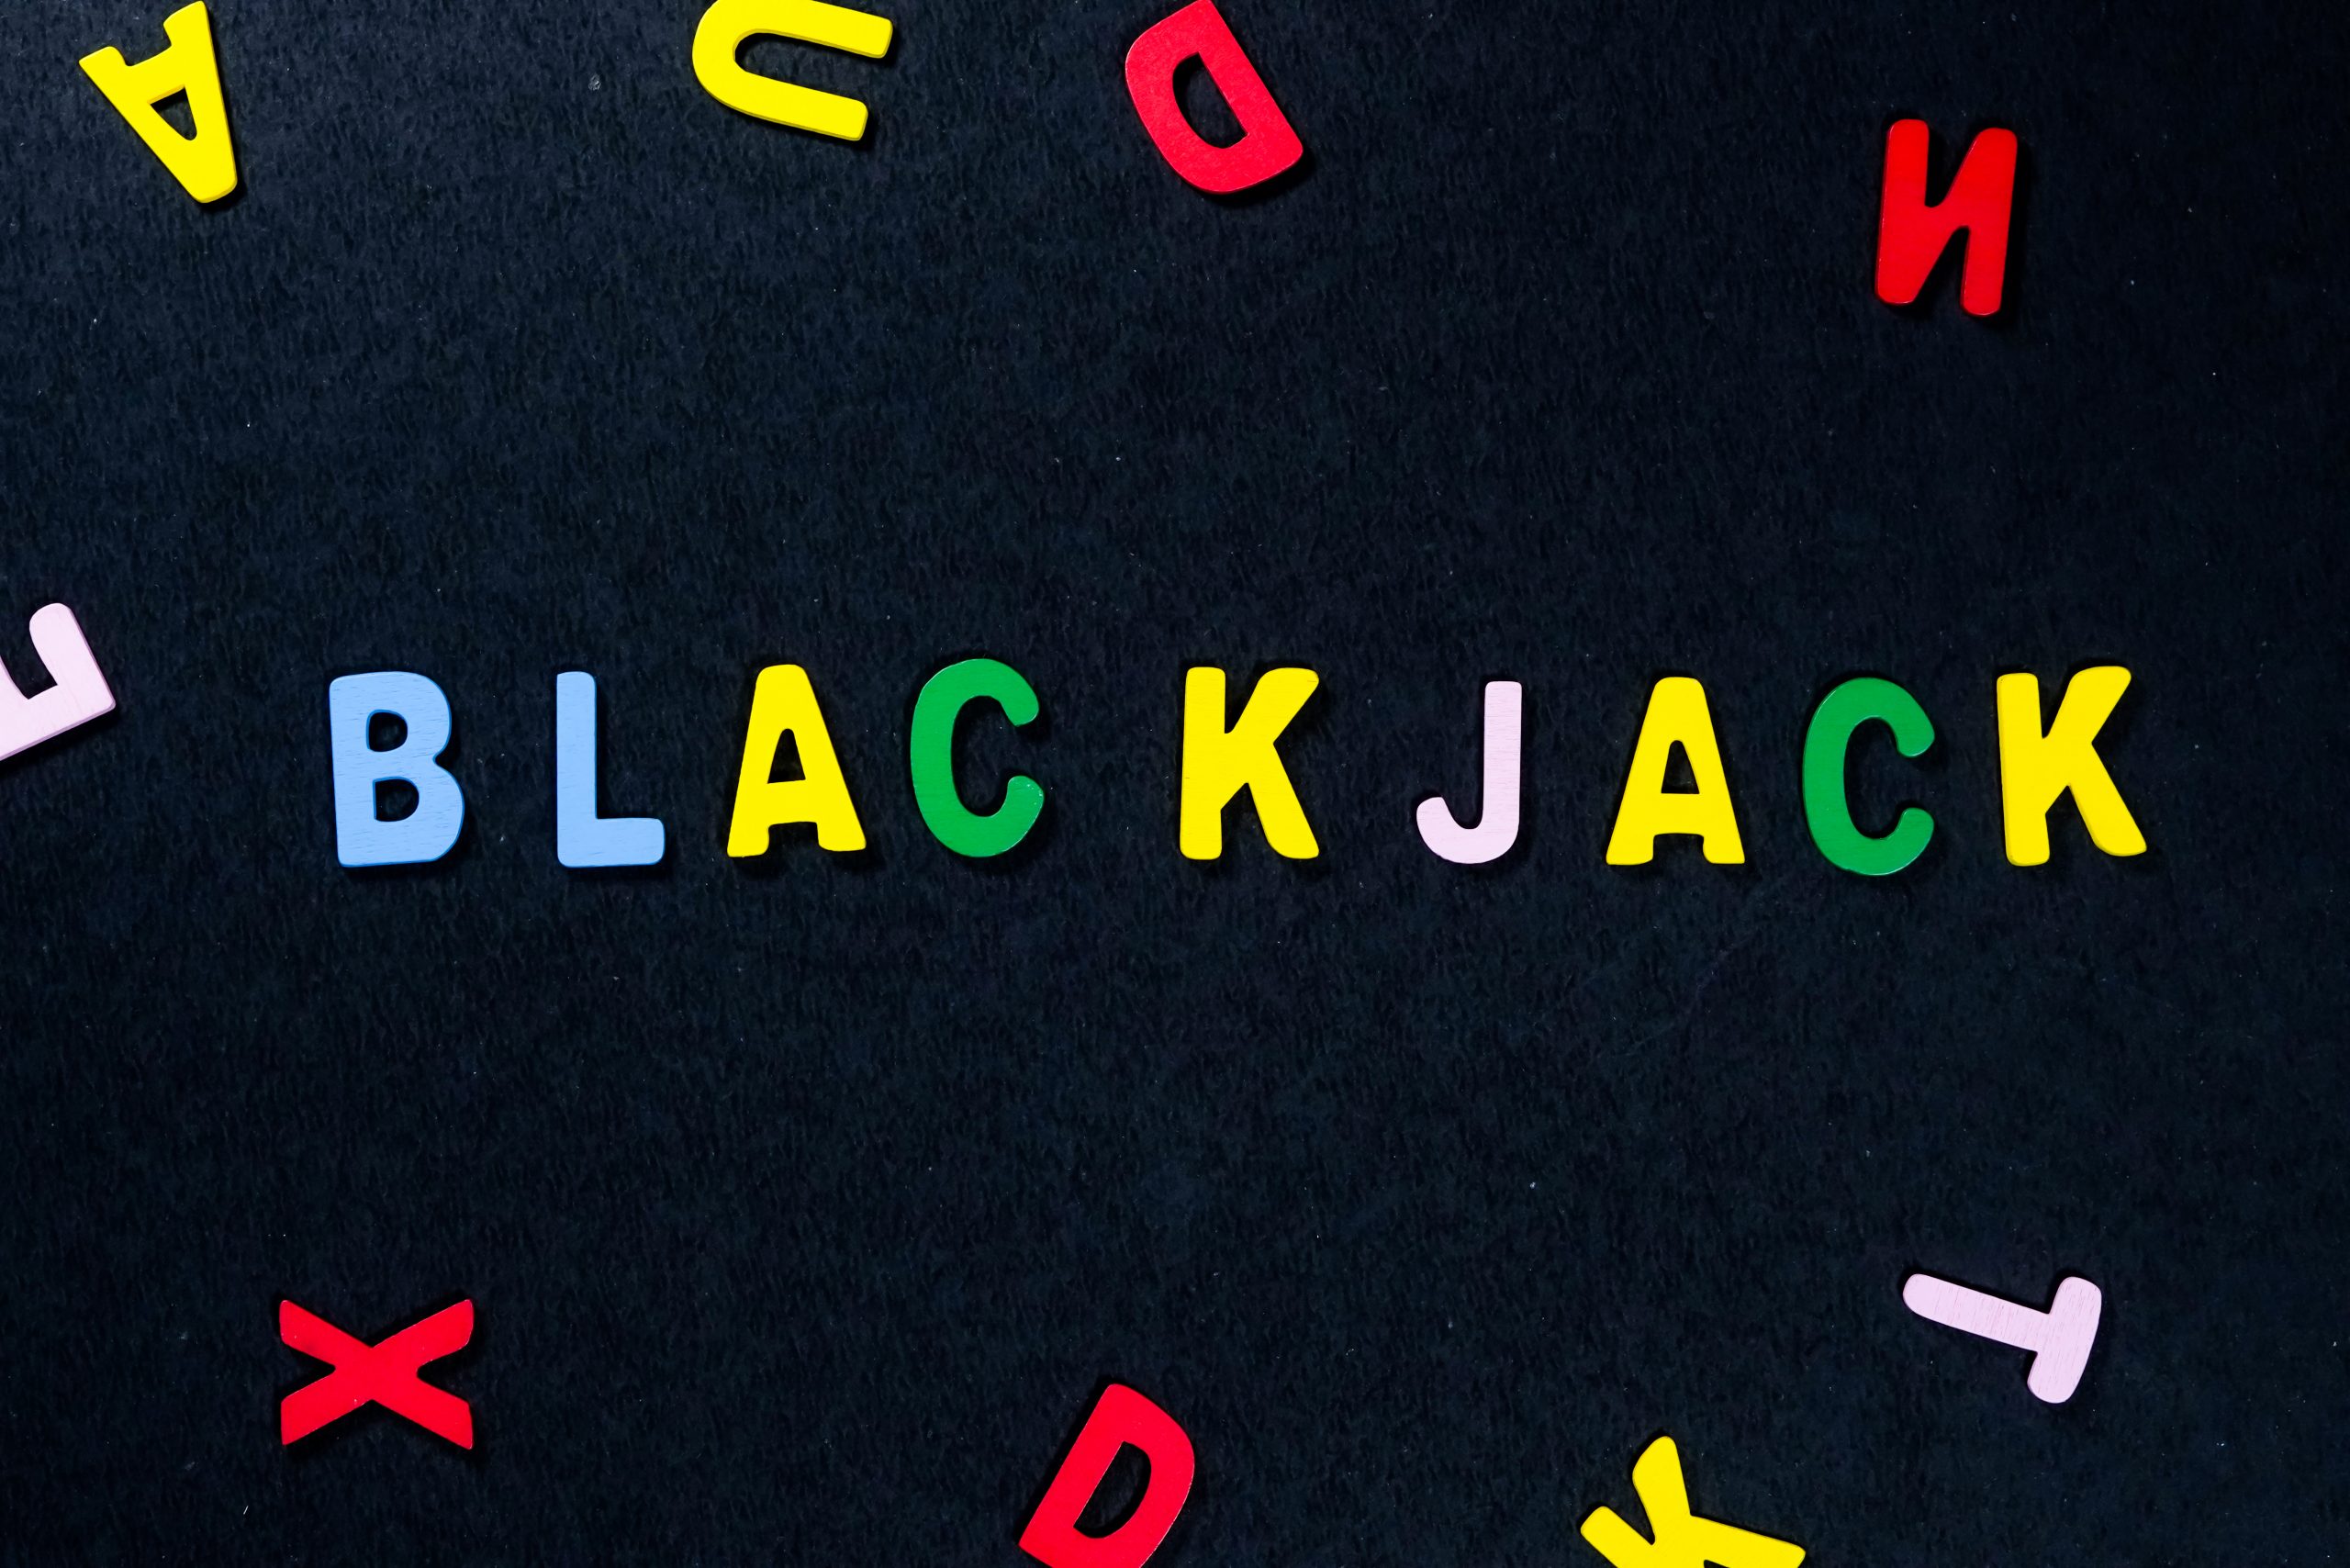 Blackjack written with scrabble